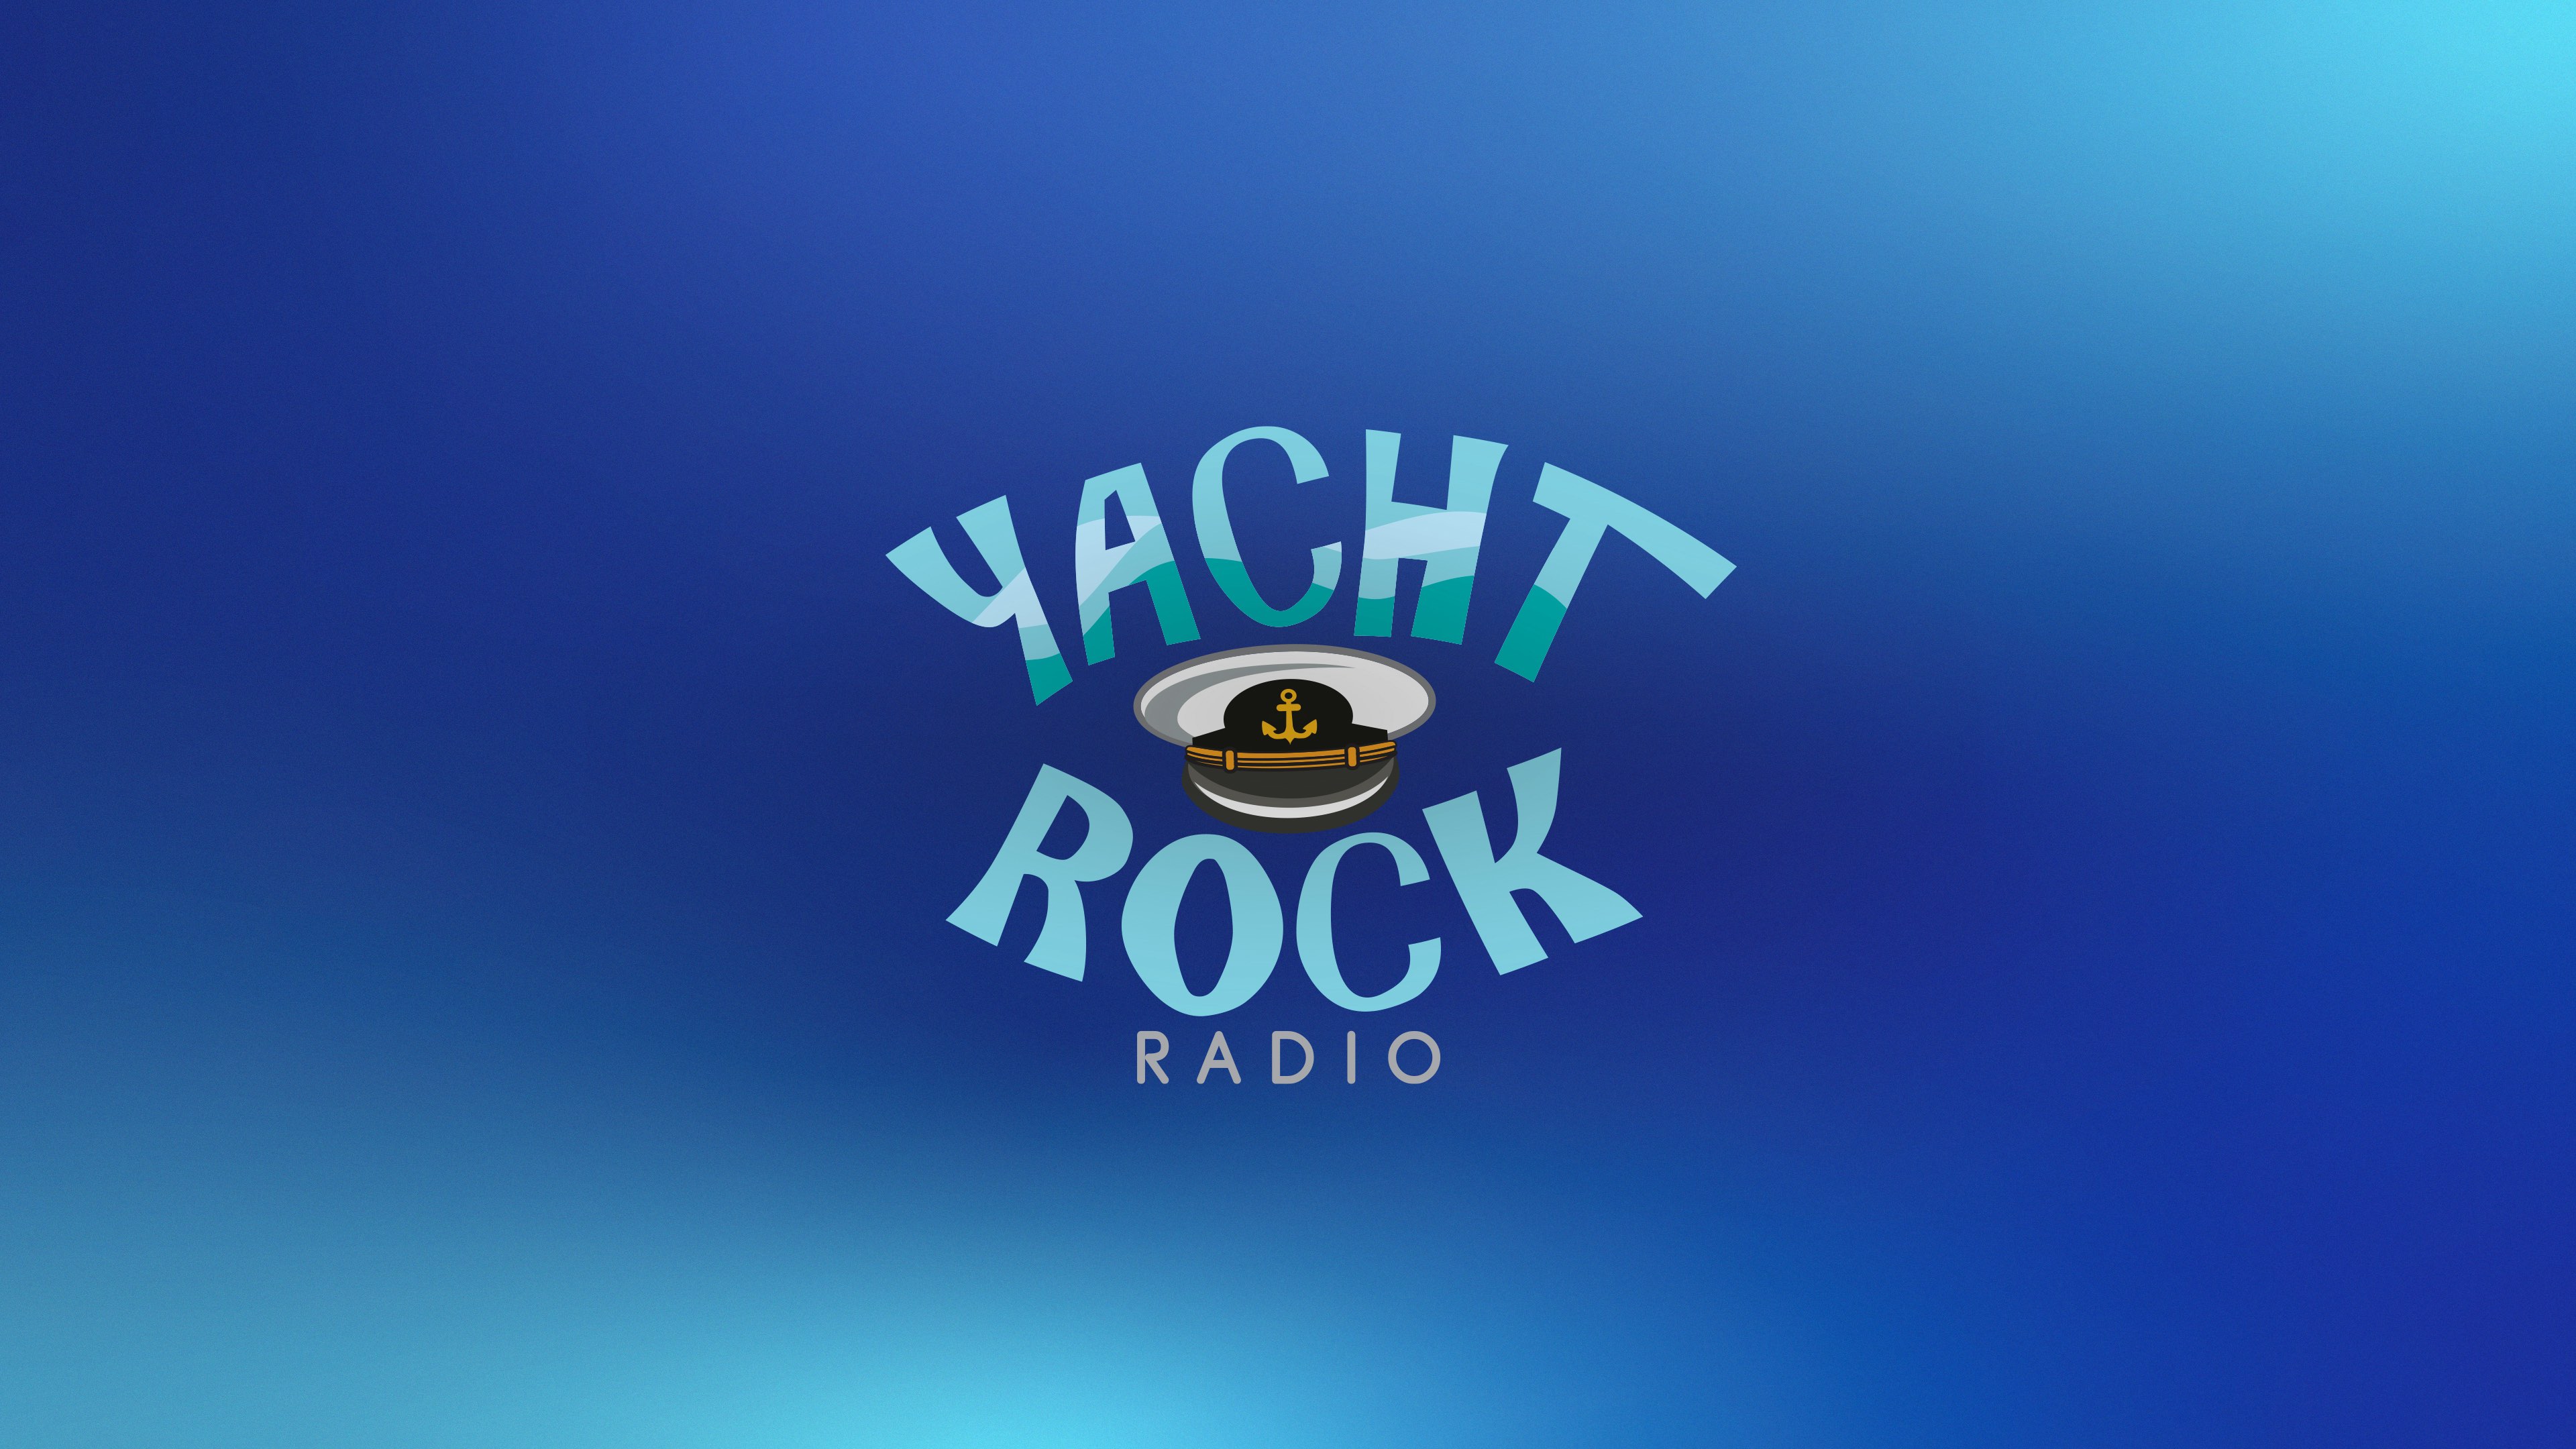 Yacht Rock Radio on SiriusXM